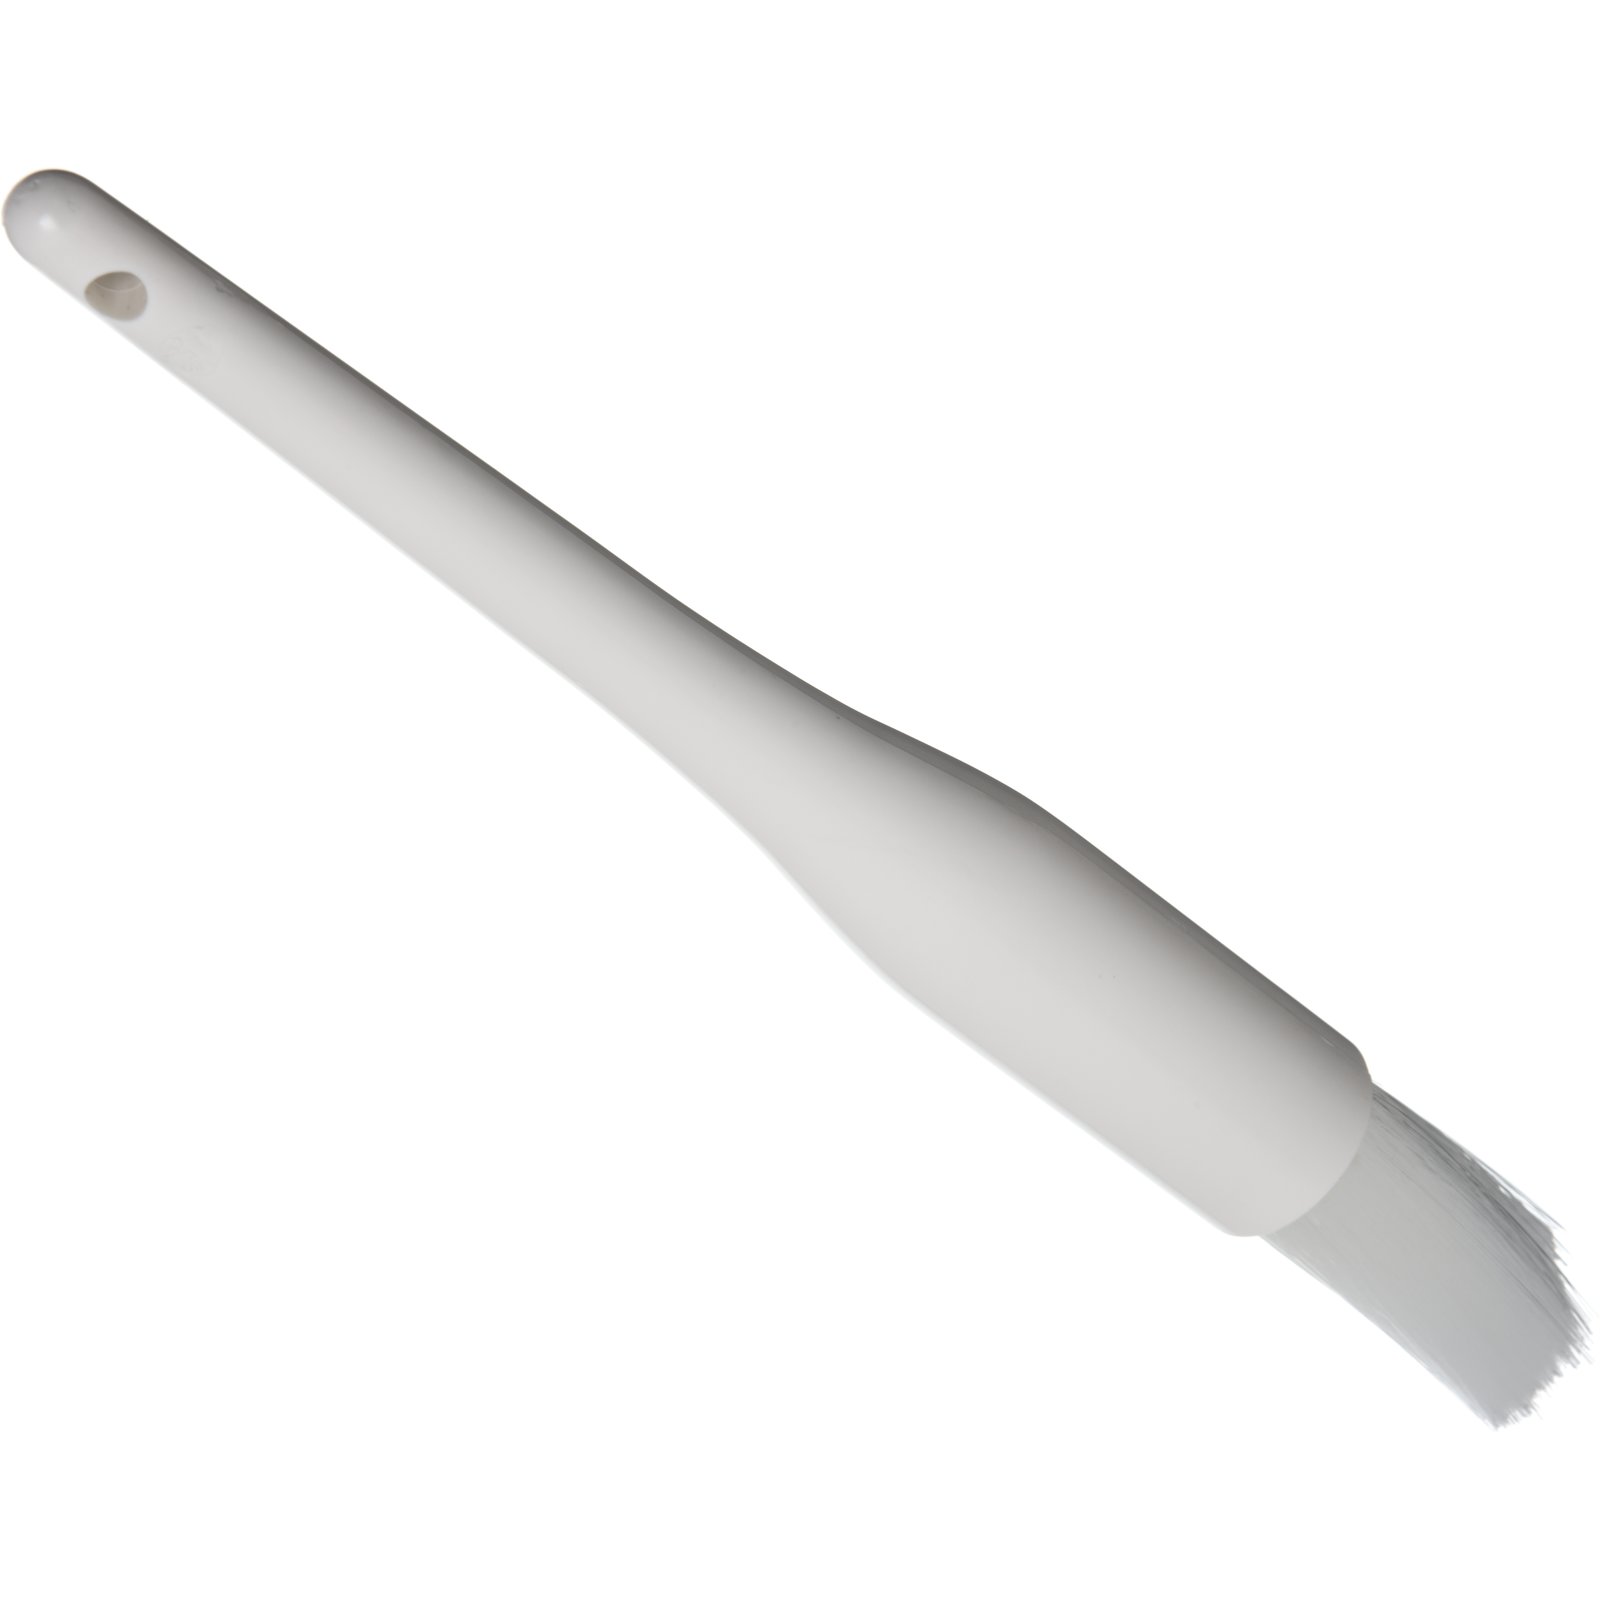 4039202 - Galaxy™ Pastry Brush 3 - White